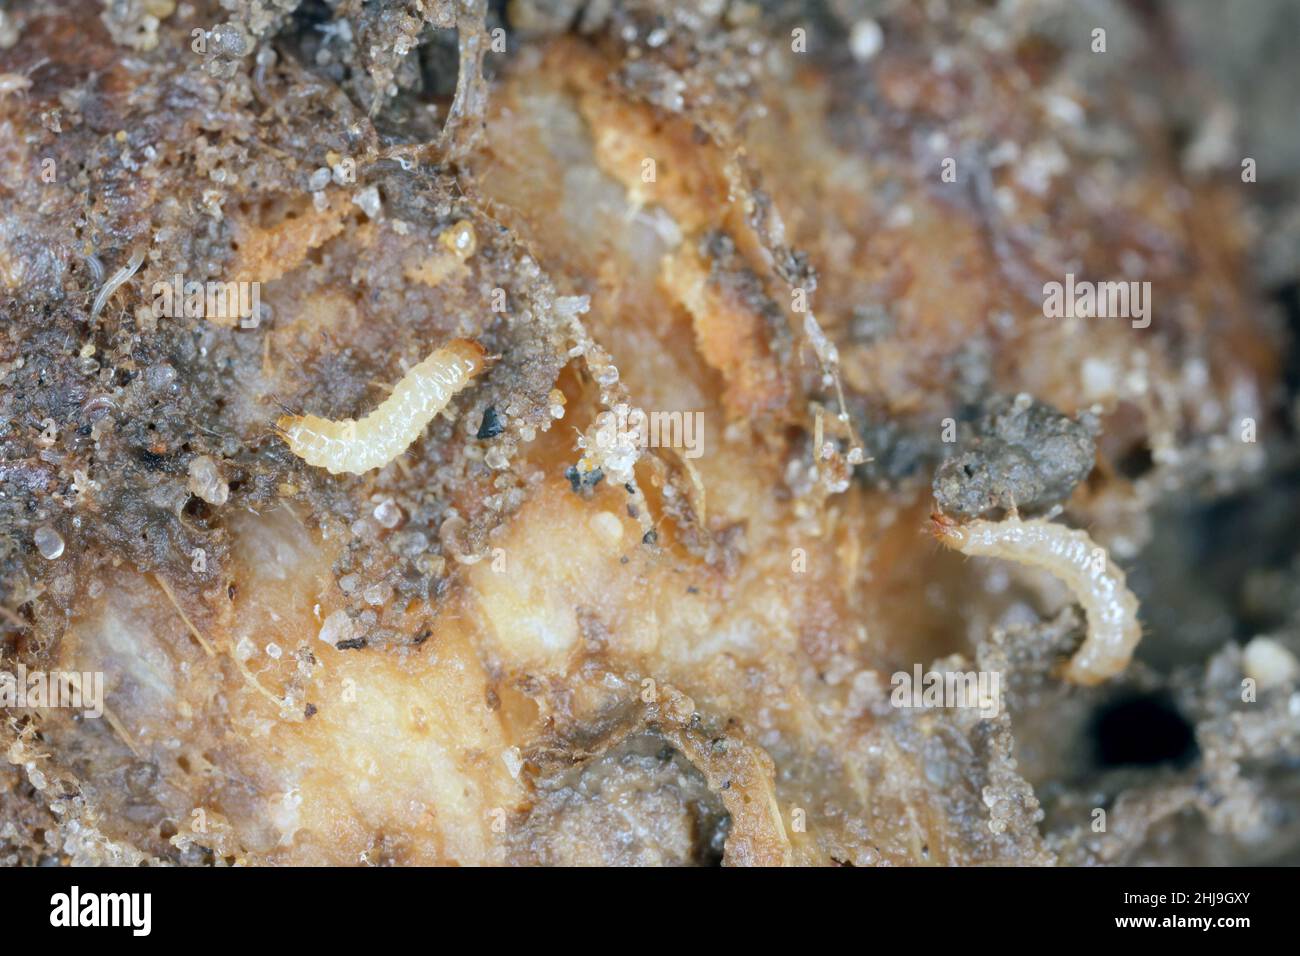 Cebolla dañada por enfermedad fúngica causada por Fusarium oxysporum. Causa la putrefacción de las cebollas en las que aparecen los ácaros y sus enemigos naturales. Foto de stock